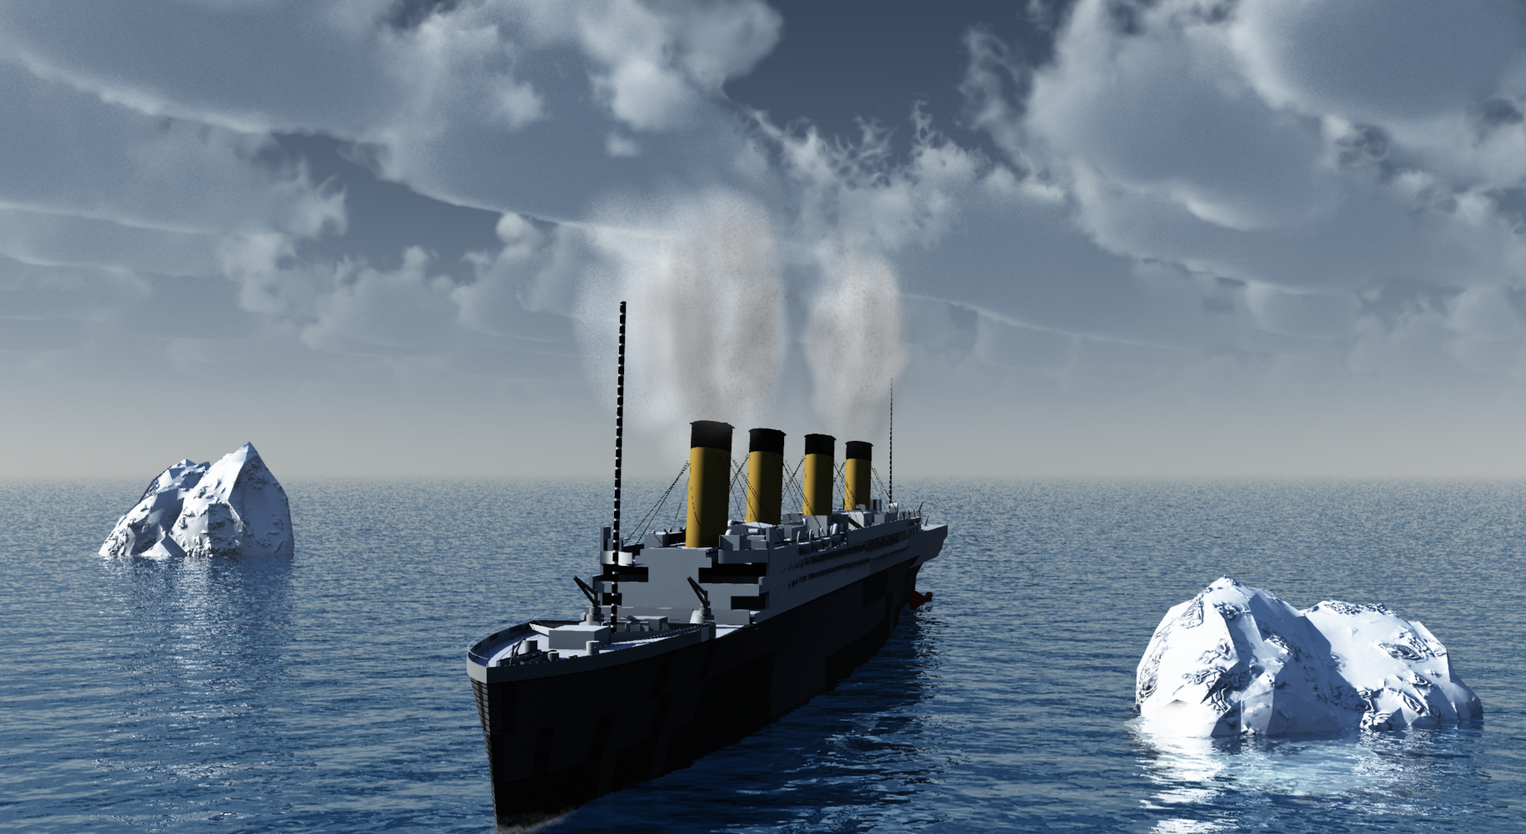 Sous-marin disparu près du Titanic : une nouvelle macabre découverte